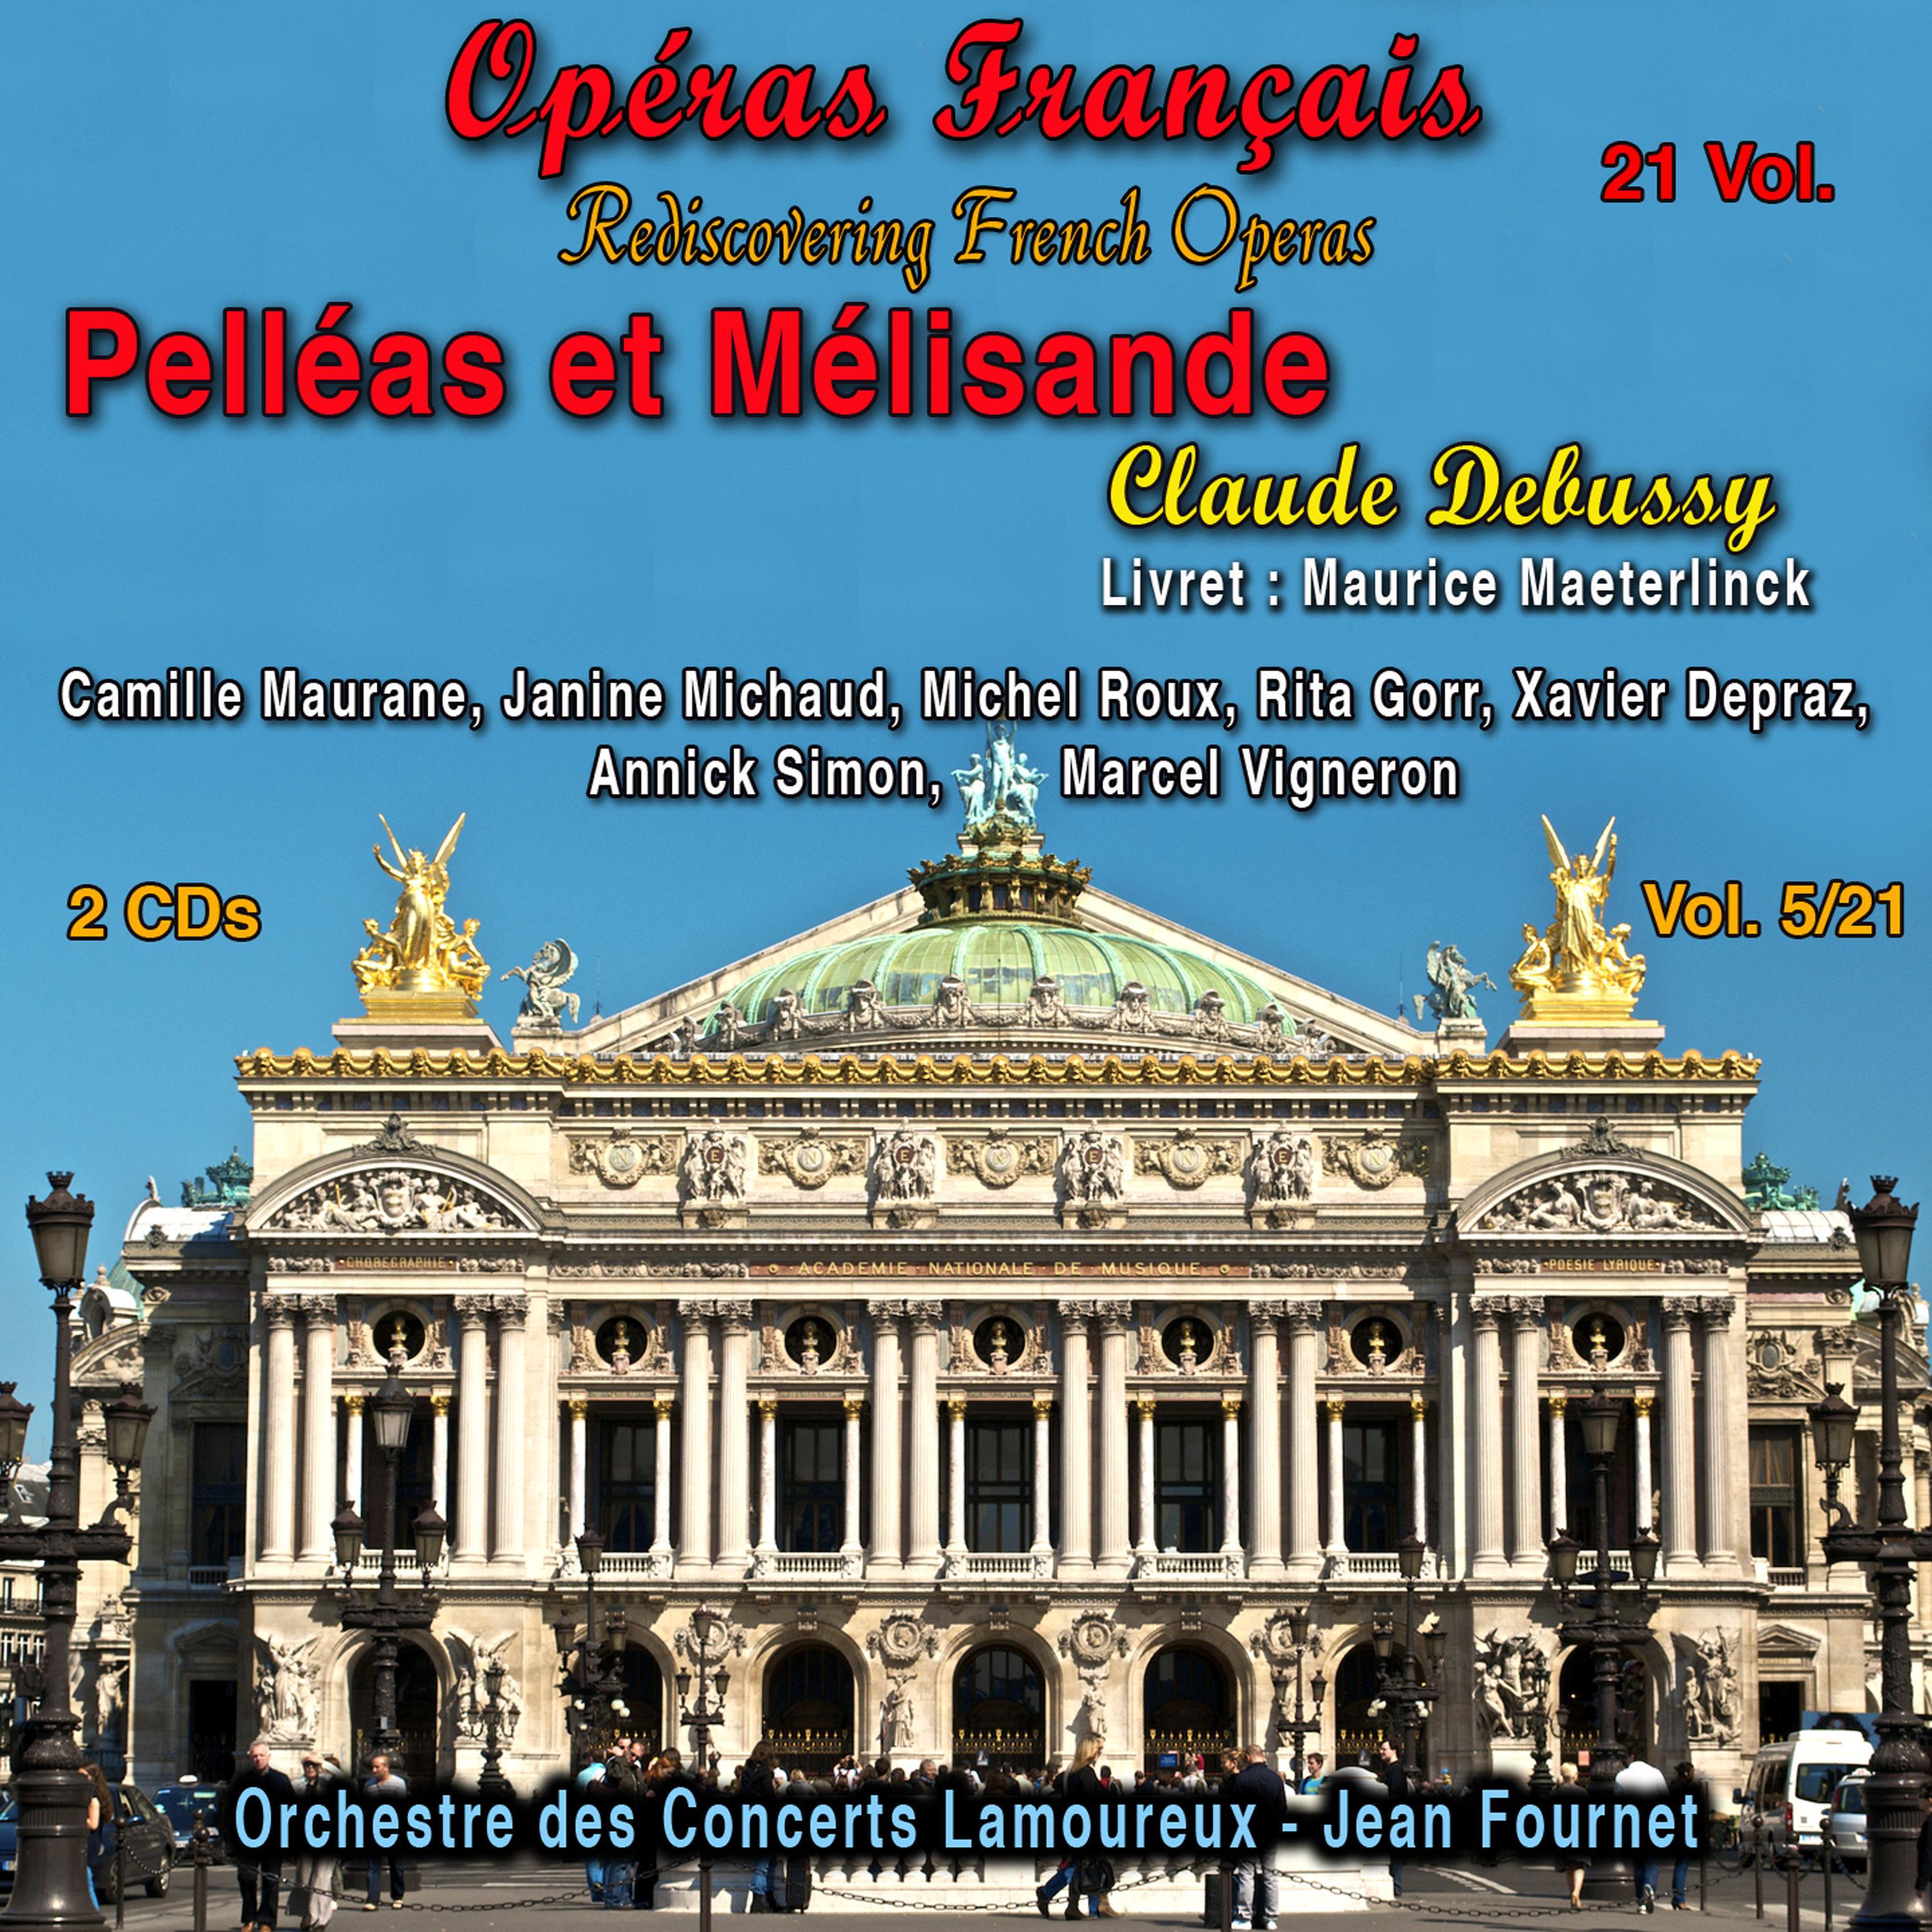 Claude Debussy - Pelléas et Mélisande, Acte IV, Scène 2: Maintenant, le père Pelléas est sauvé